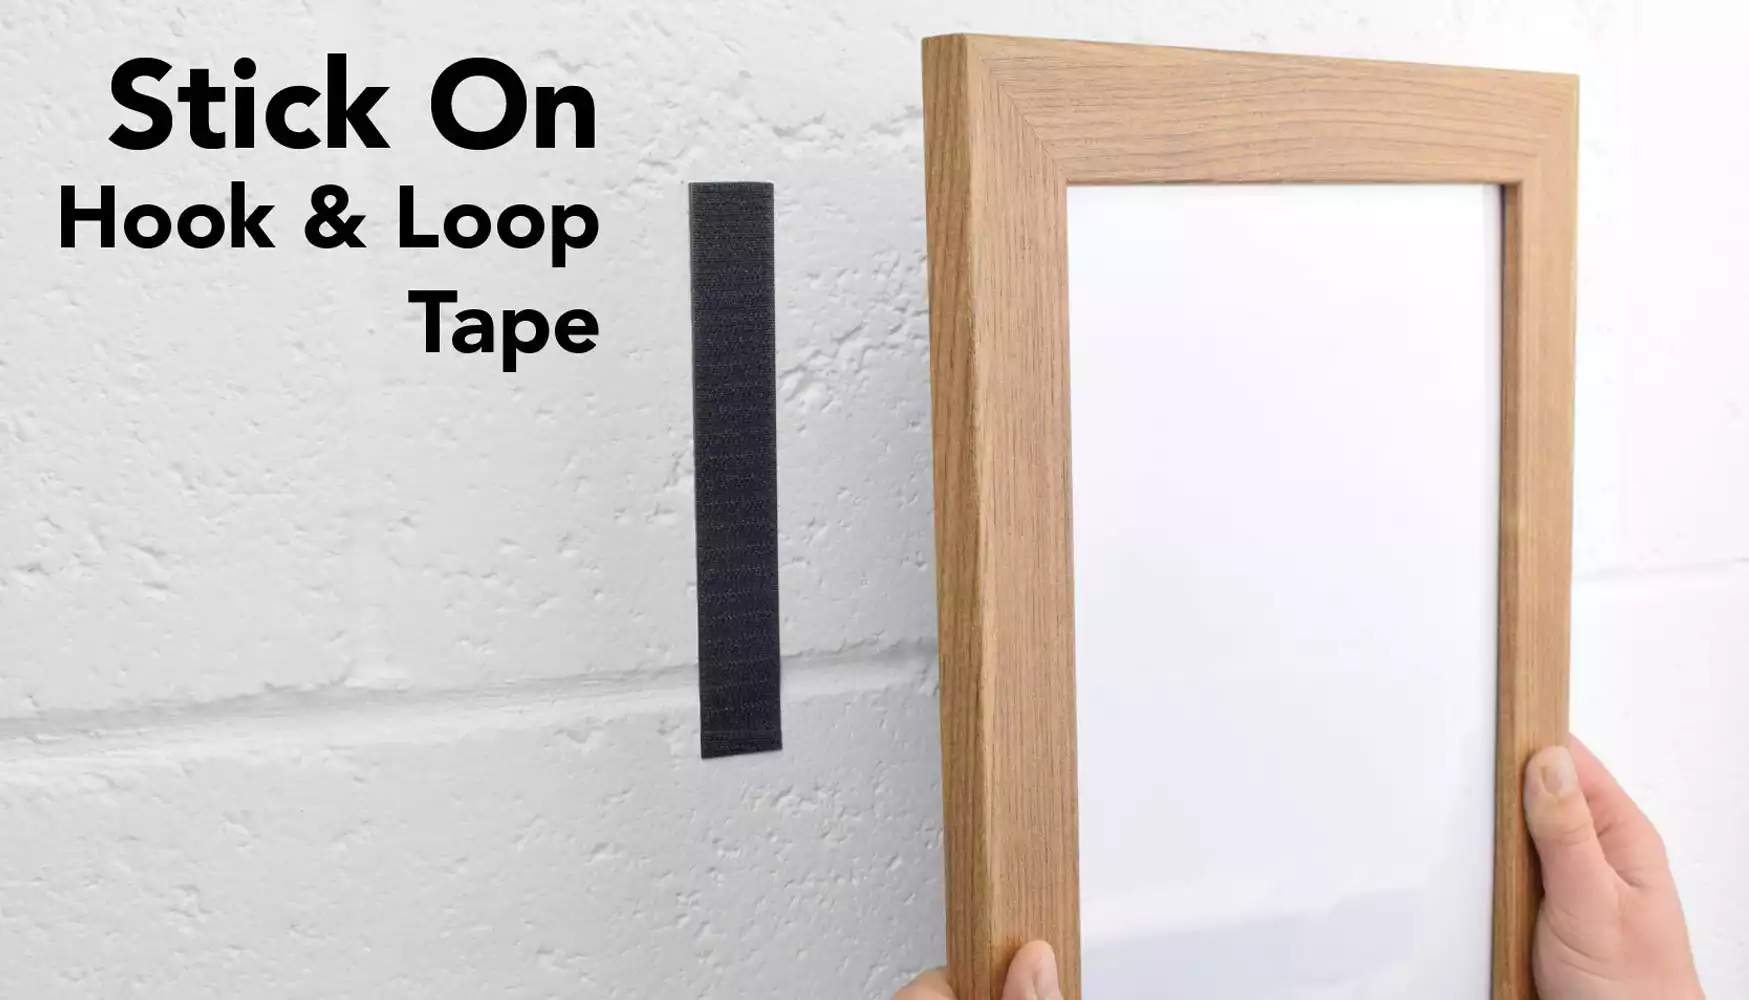 Stick On Hook & Loop Tape